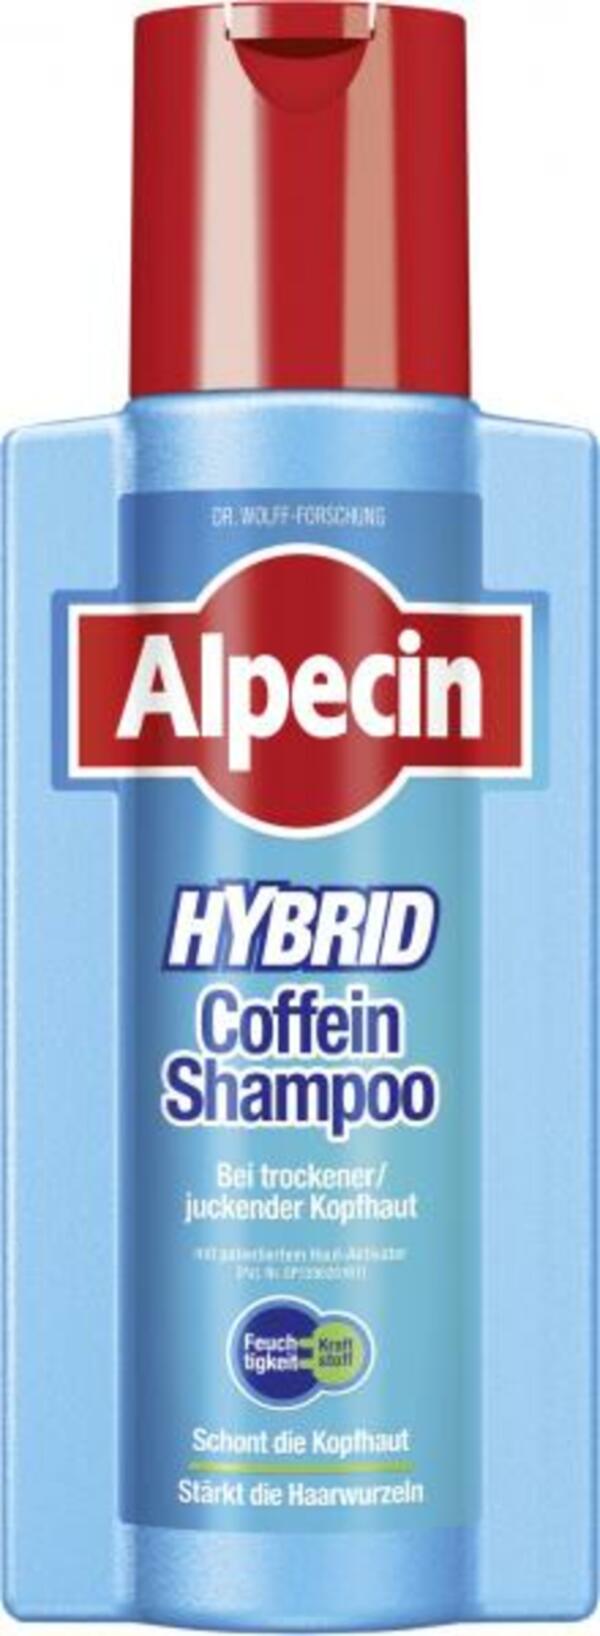 Bild 1 von Alpecin Hybrid Coffein Shampoo